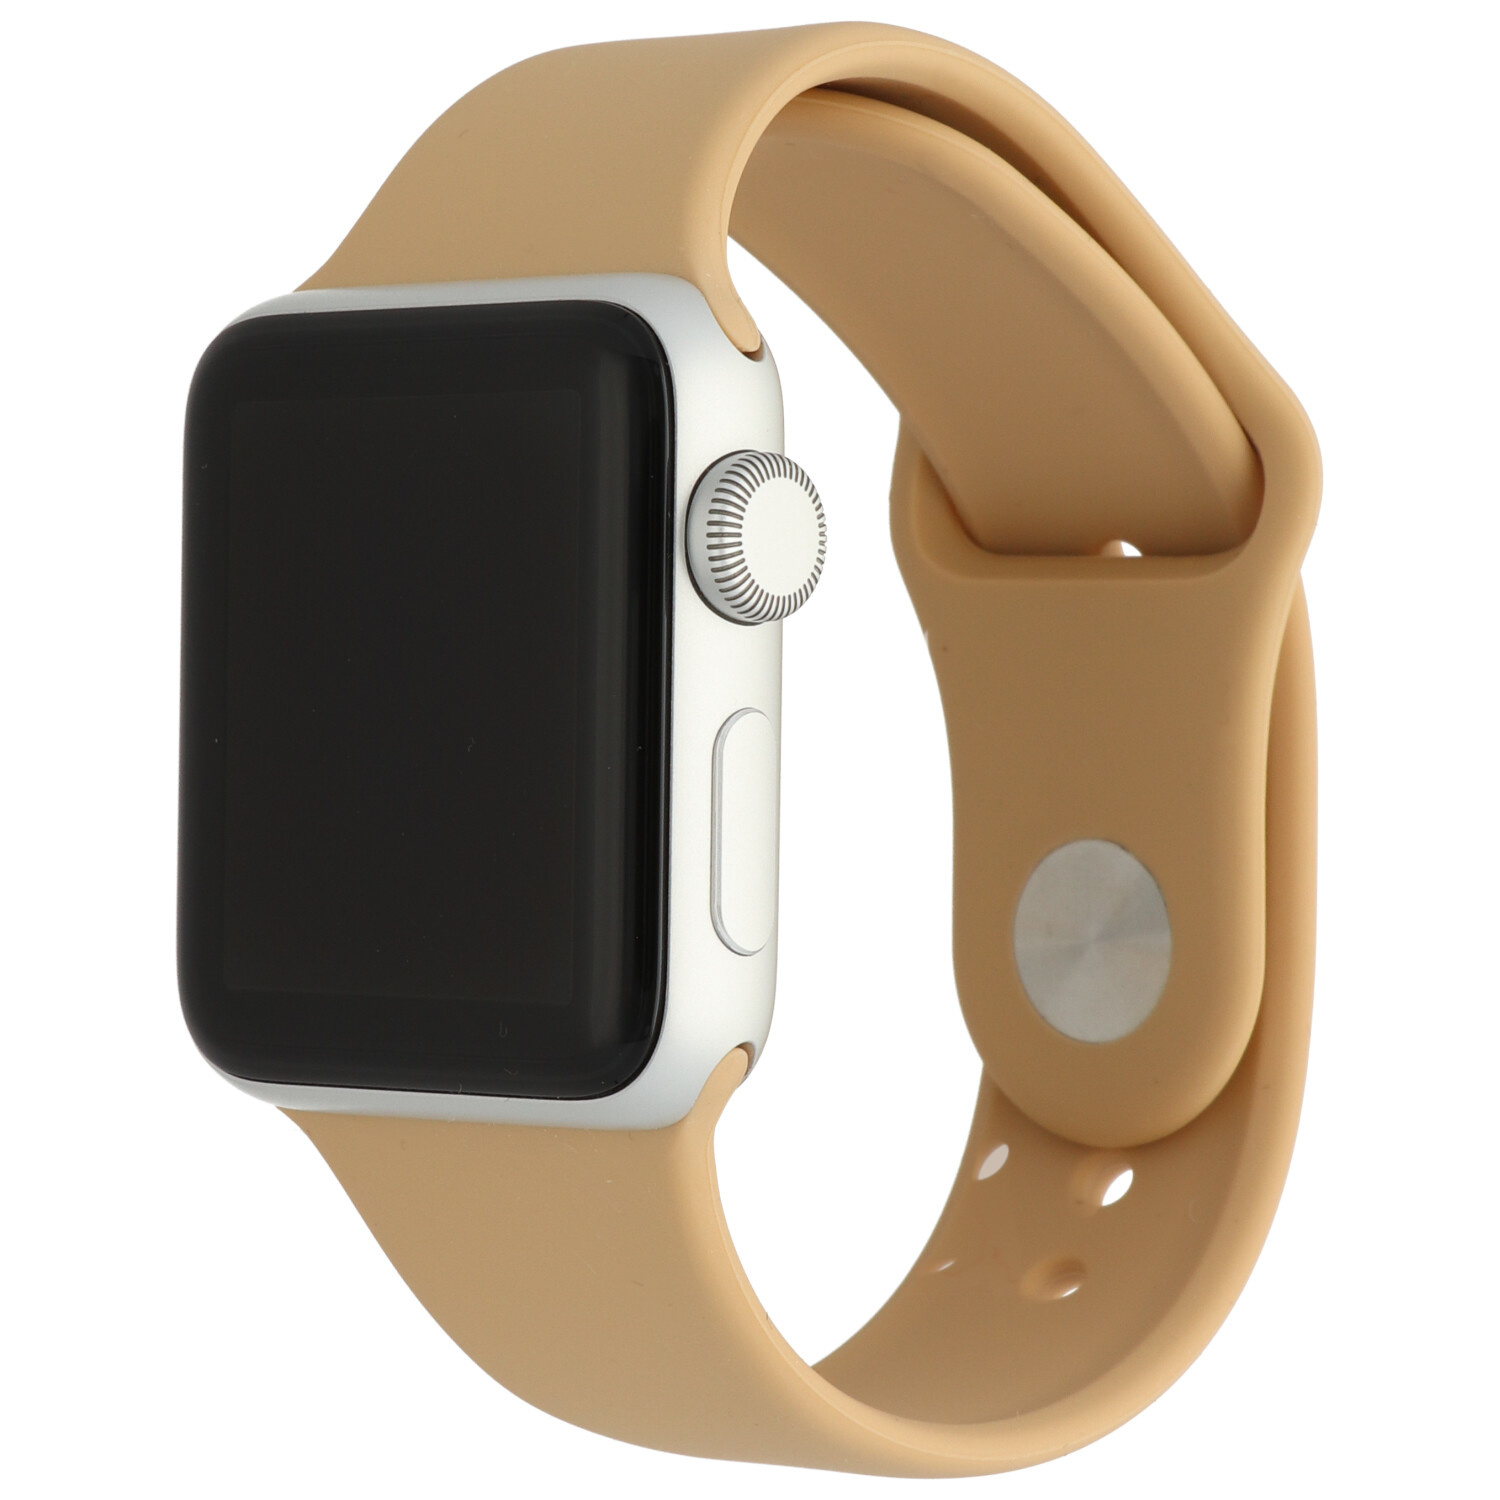  Apple Watch sport szalag - dió